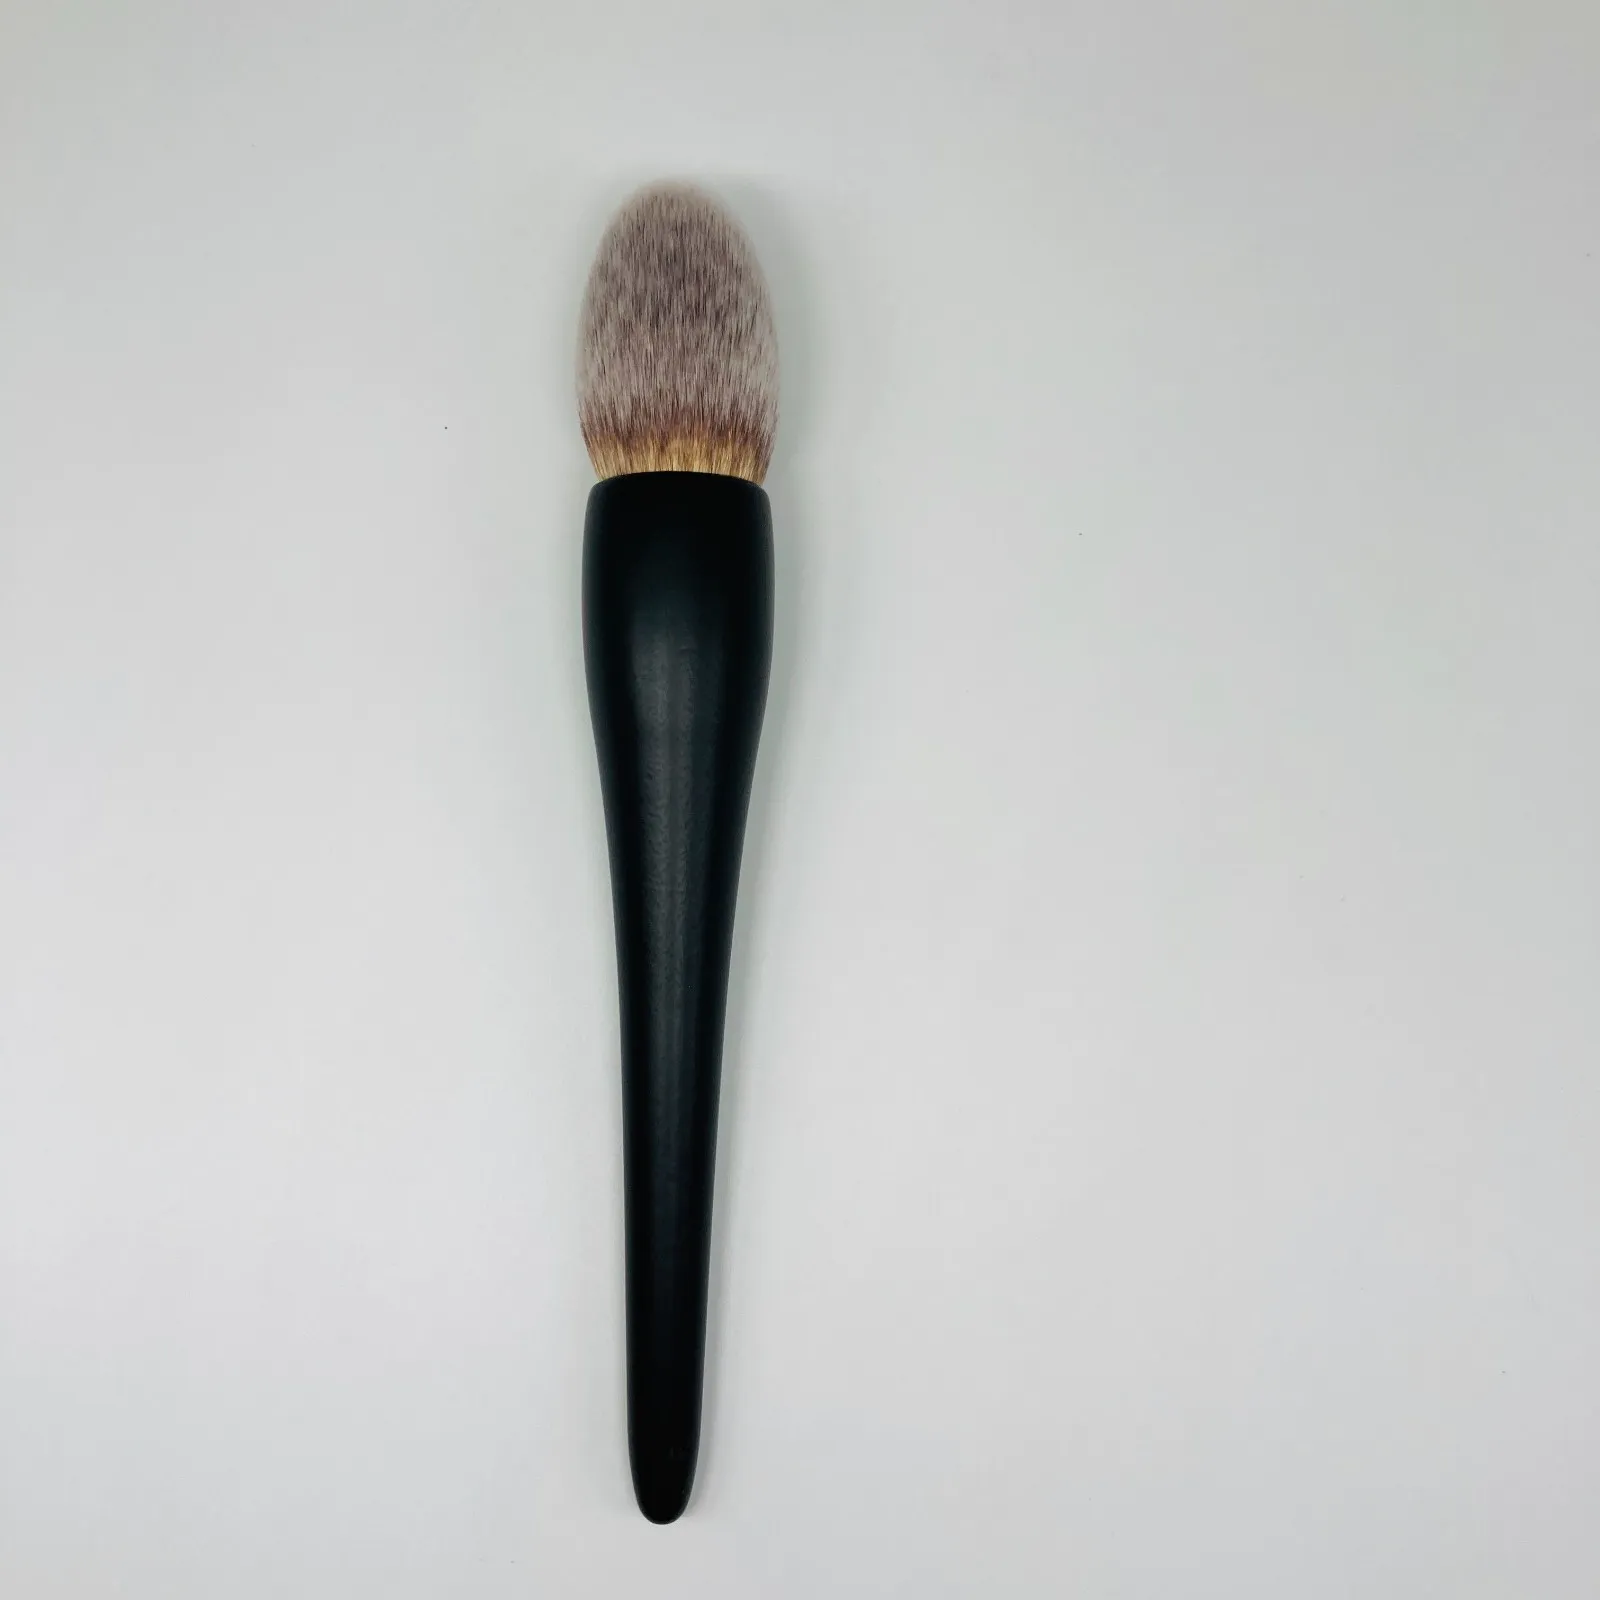 factory price OEM makeup brush wholesale bulk buy